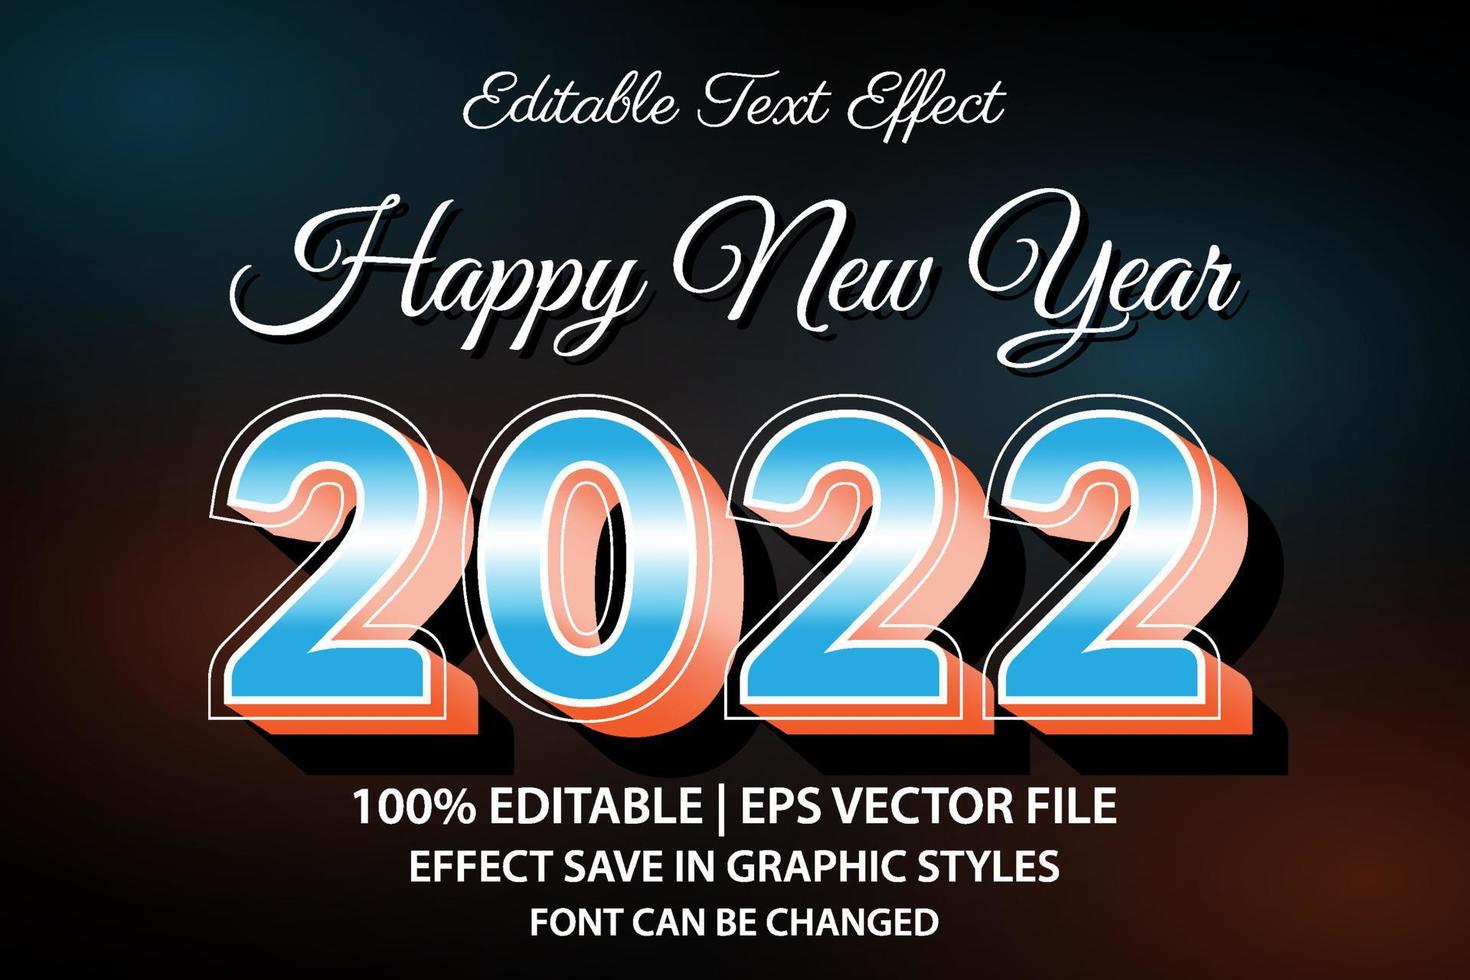 felice anno nuovo 2022 effetto testo modificabile stile 3d vettore